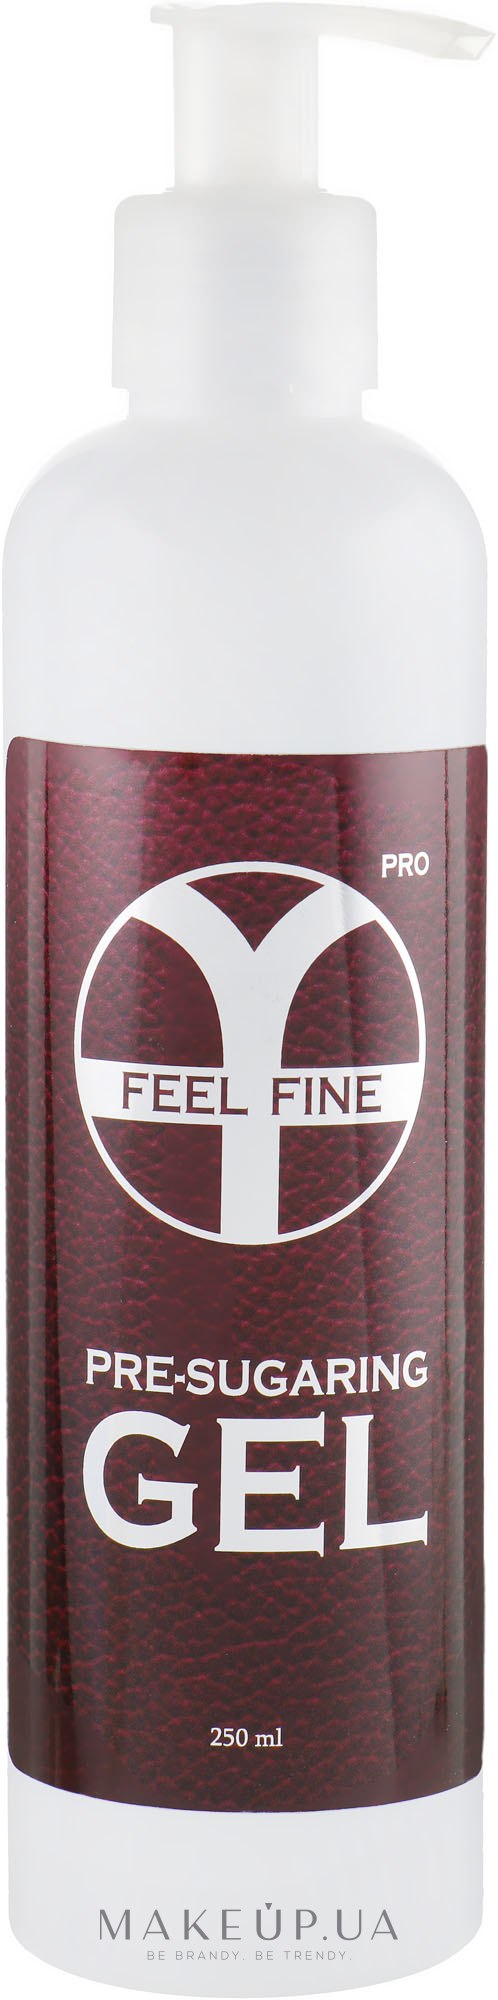 Гель для підготовки шкіри до шугарінгу - Feel Fine Pro Pre-Sugaring Gel — фото 250ml